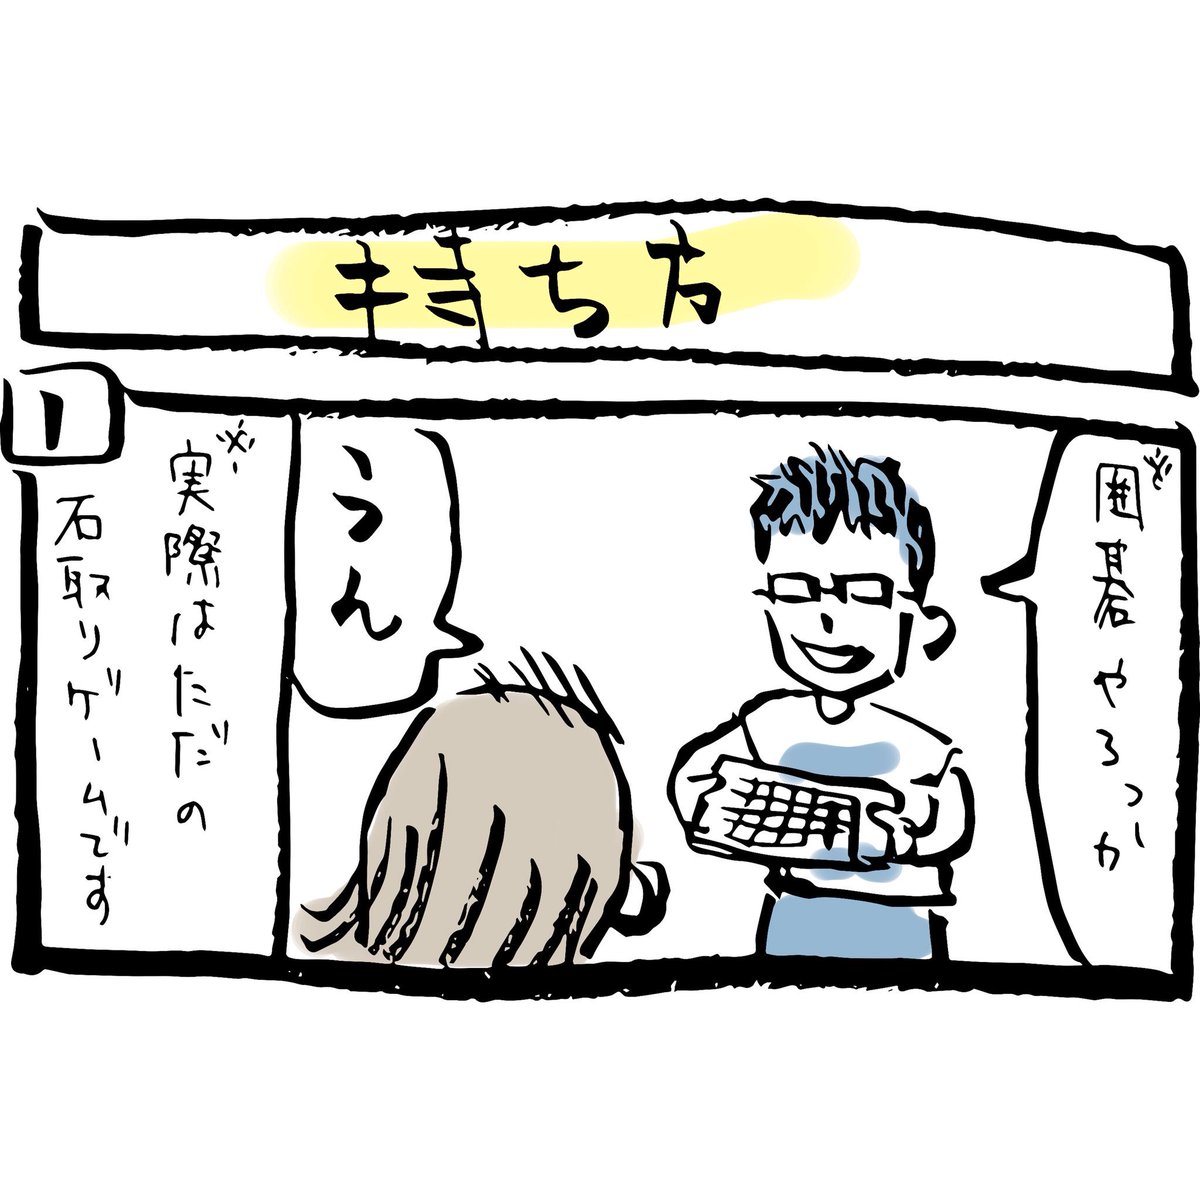 ぽんすけ成長日記その83

「持ち方」

ぼくが囲碁クエスト大好きで、日本棋院で販売されている9路盤のゴム板とプラスチック碁石で、石取りゲームをします。

ぼくの持ち方を真似する姿がかわいかったです。

#ぽんすけ成長日記
#石取りゲーム
#囲碁クエスト
#ヒカルの碁
#育児マンガ
#4コマ漫画 